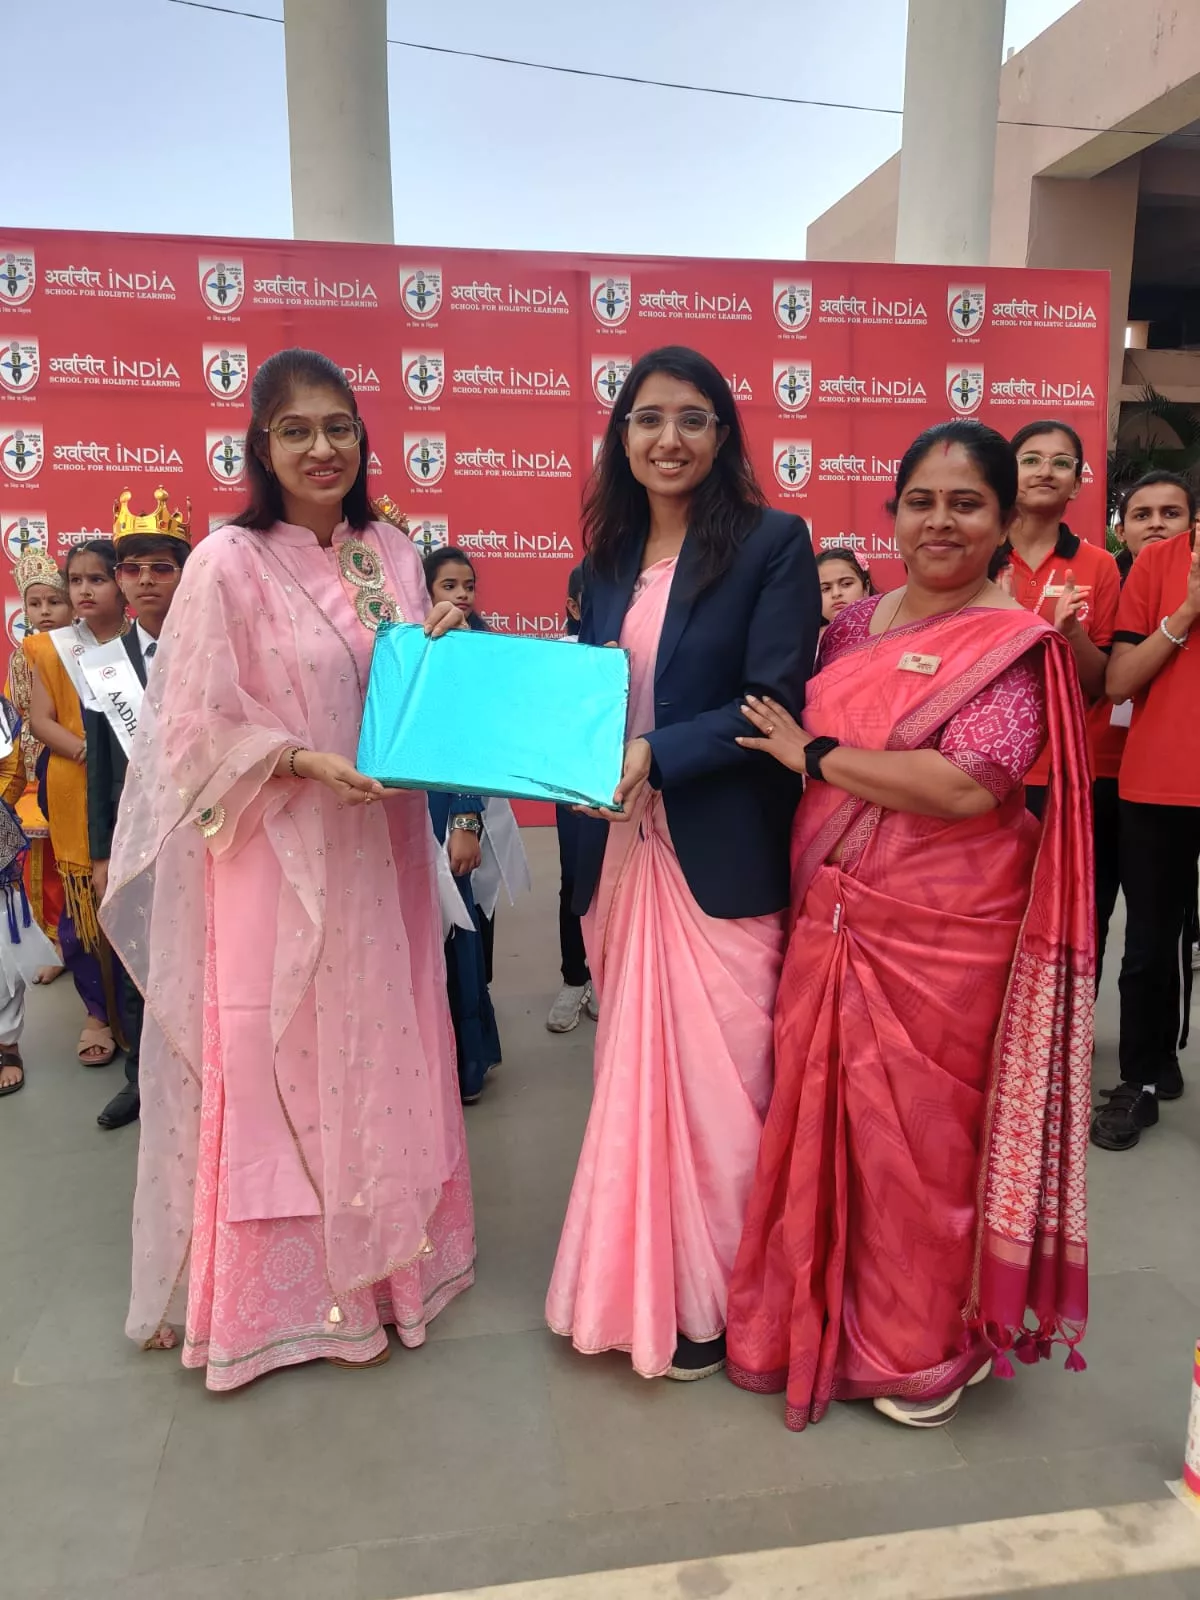 अर्वाचीन इंडिया स्कूल में फेशन शो के हुए आयोजन में प्रिंस रहे प्रियांश हिवराले, प्रिंसेस का खिताब नेन्सी खटवानी ने जीता | New India Times